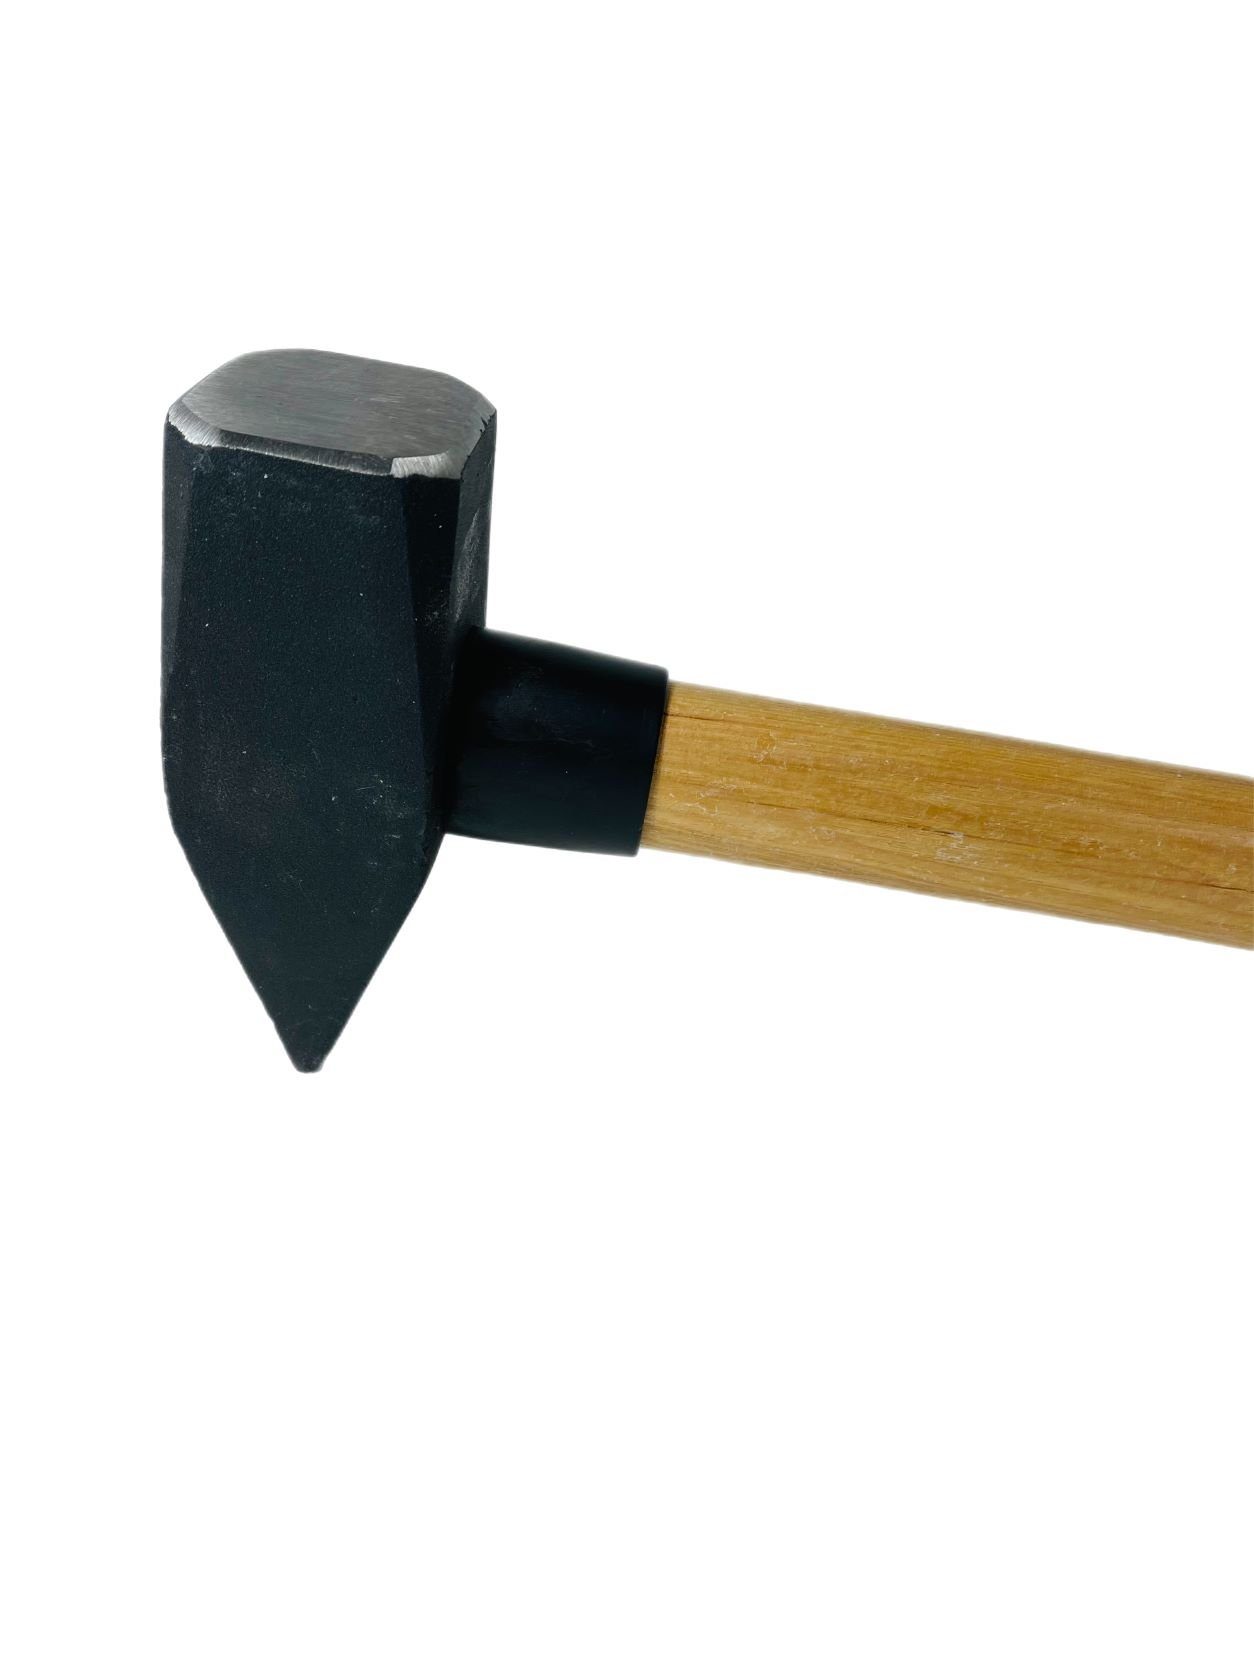 Hammer 4kg Hammer Hickorystiel Schlosserhammer VaGo-Tools Hämmer